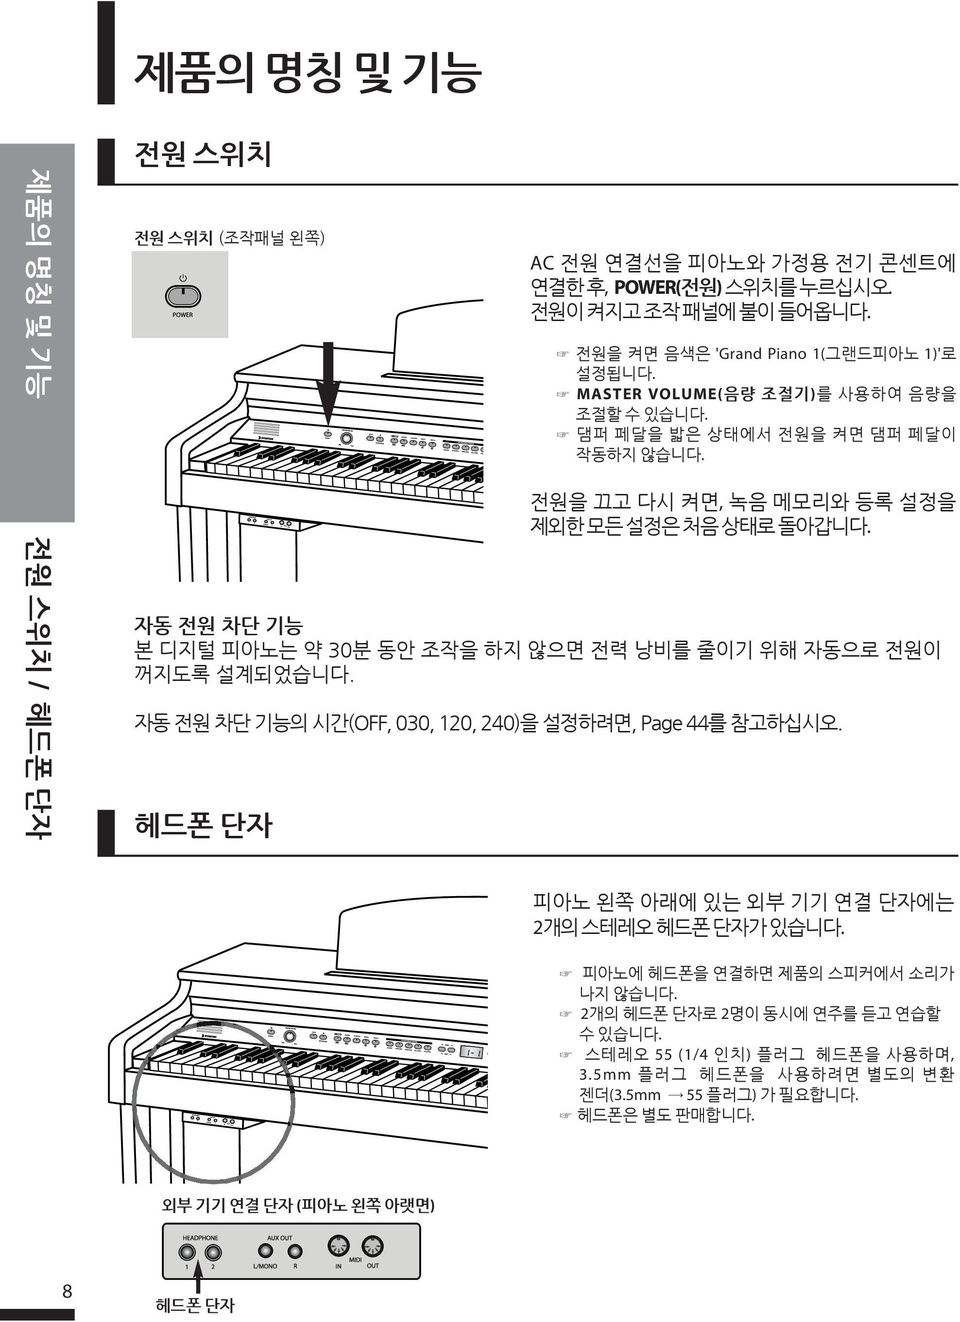 자동 전원 차단 기능 본 디지털 피아노는 약 30분 동안 조작을 하지 않으면 전력 낭비를 줄이기 위해 자동으로 전원이 꺼지도록 설계되었습니다. 자동 전원 차단 기능의 시간(OFF, 030, 120, 240)을 설정하려면, Page 44를 참고하십시오.